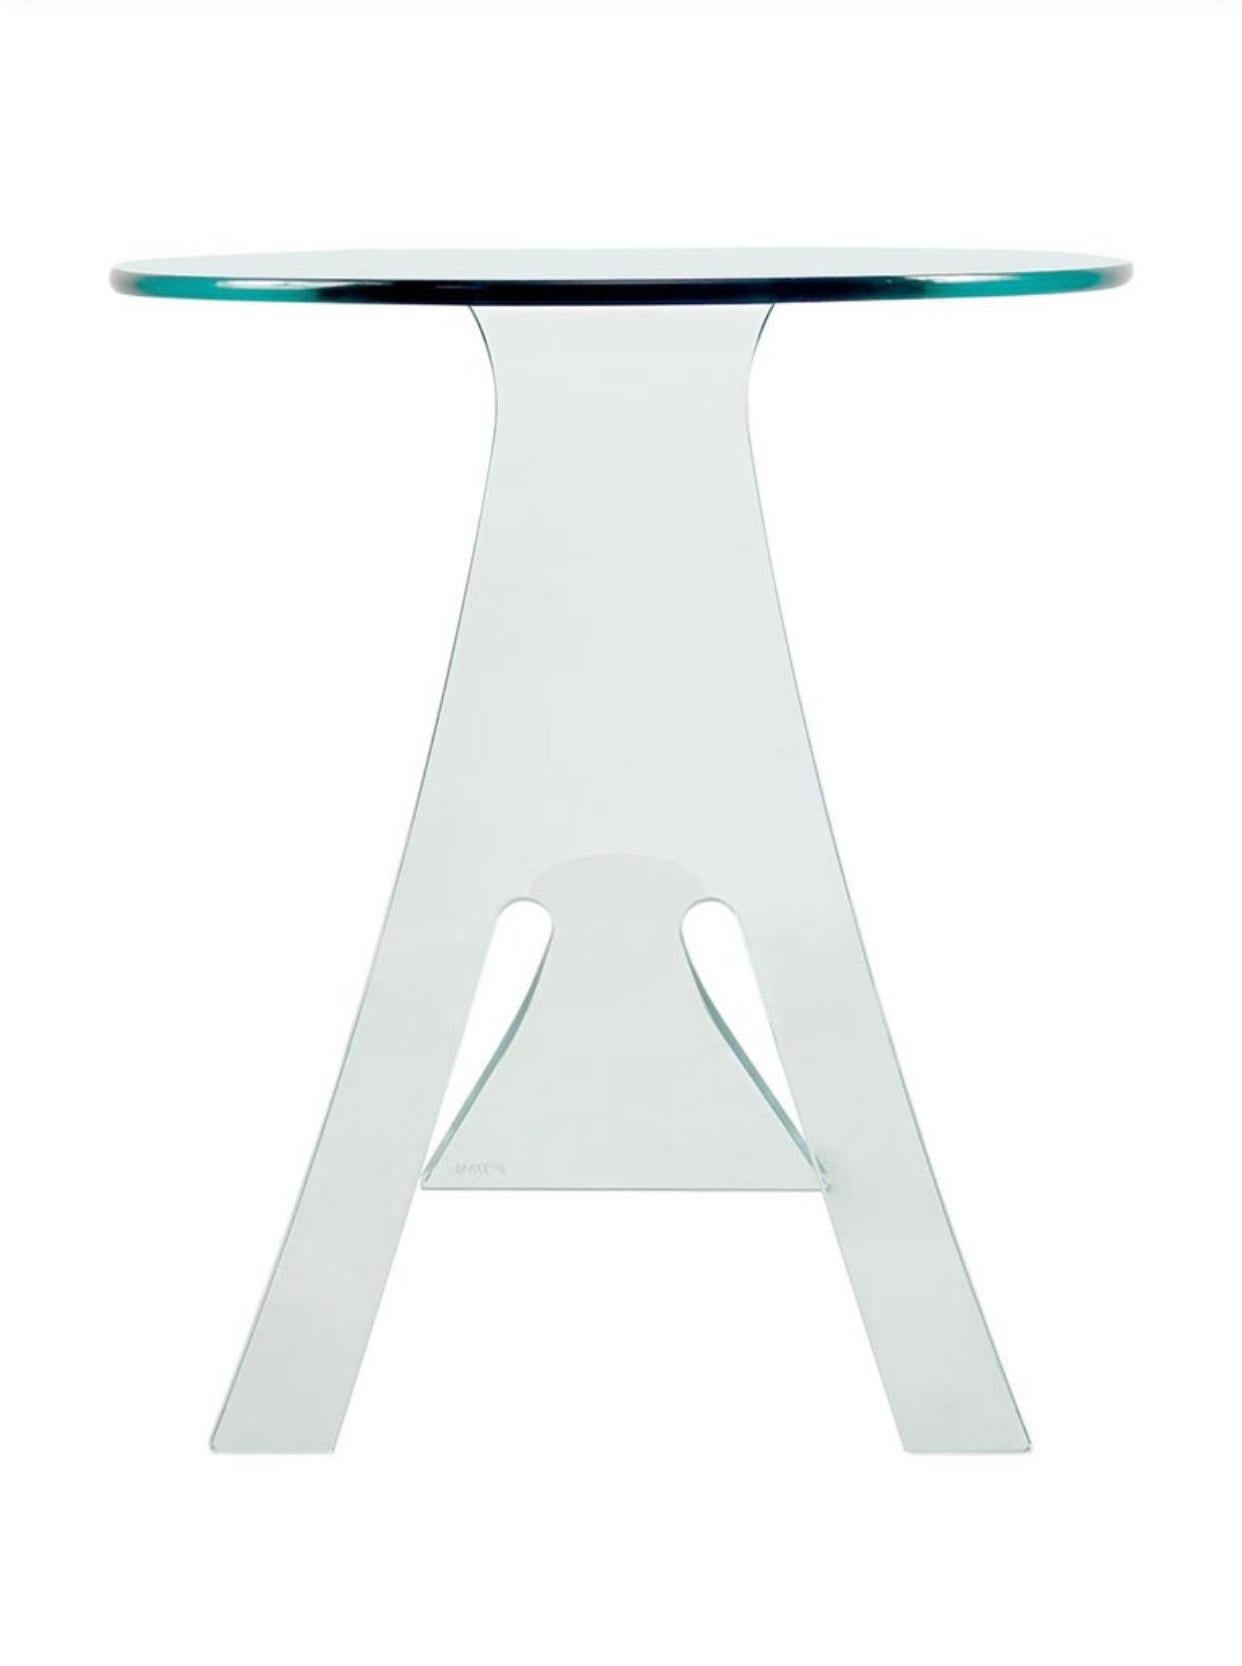 Table d'appoint ou table basse en verre transparent de forme organique, conçue par Vittorio Livi pour FIAM Italia. Superbe design ! Nous avons deux pièces disponibles qui sont toutes deux en très bon état.